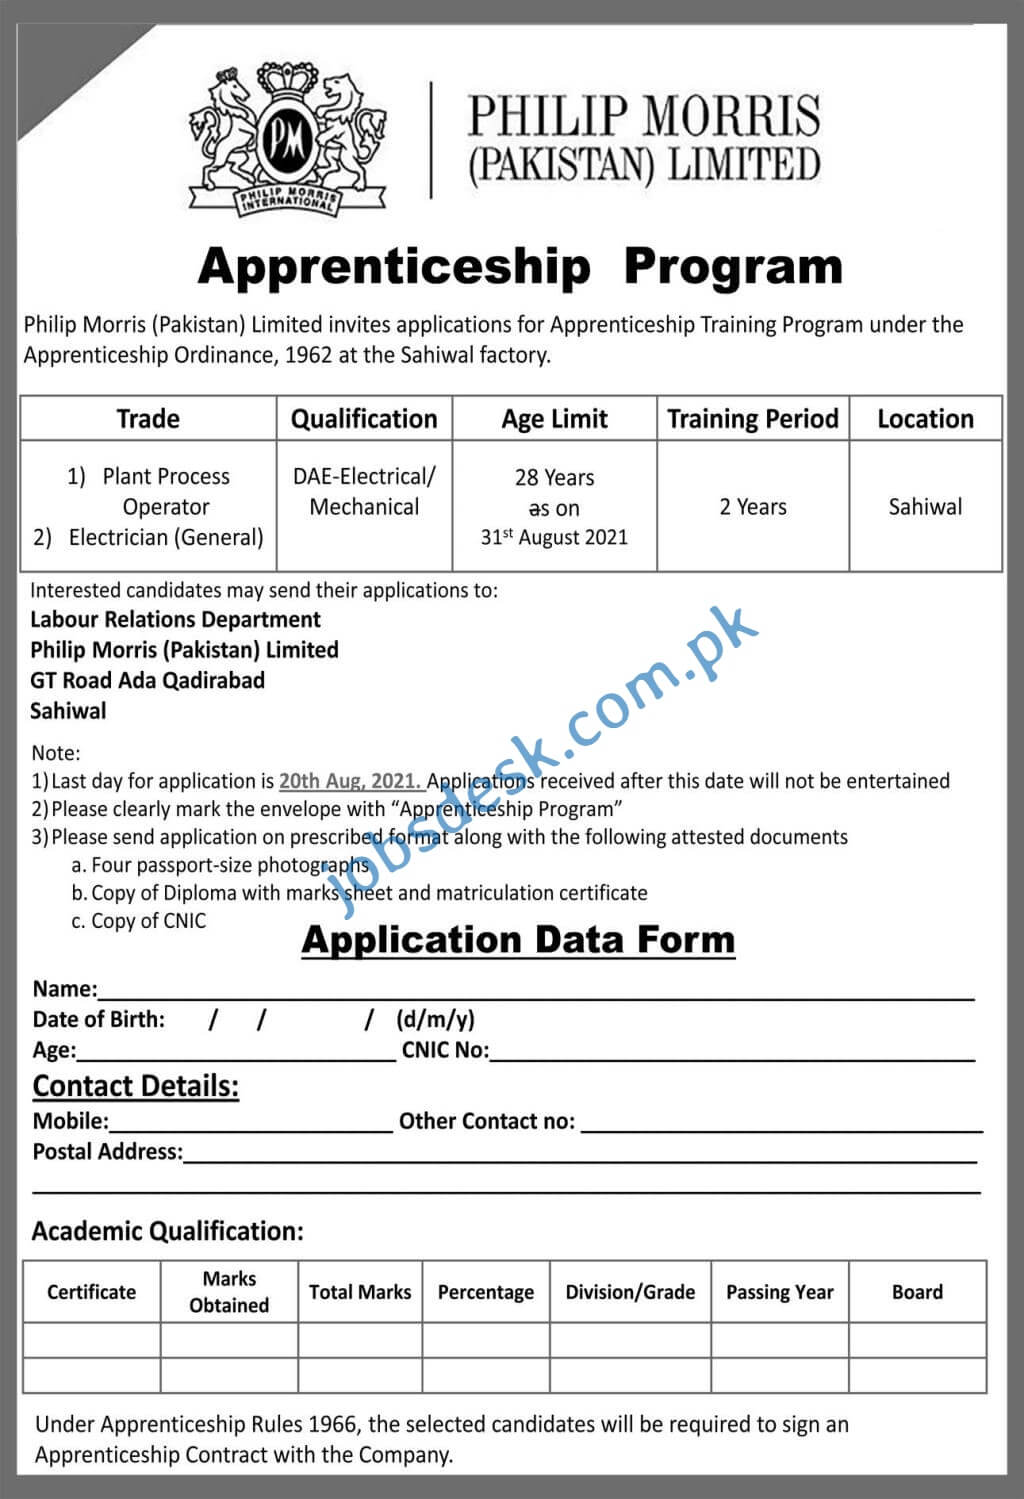 Apprenticeship in Philip Morris Pakistan 2021